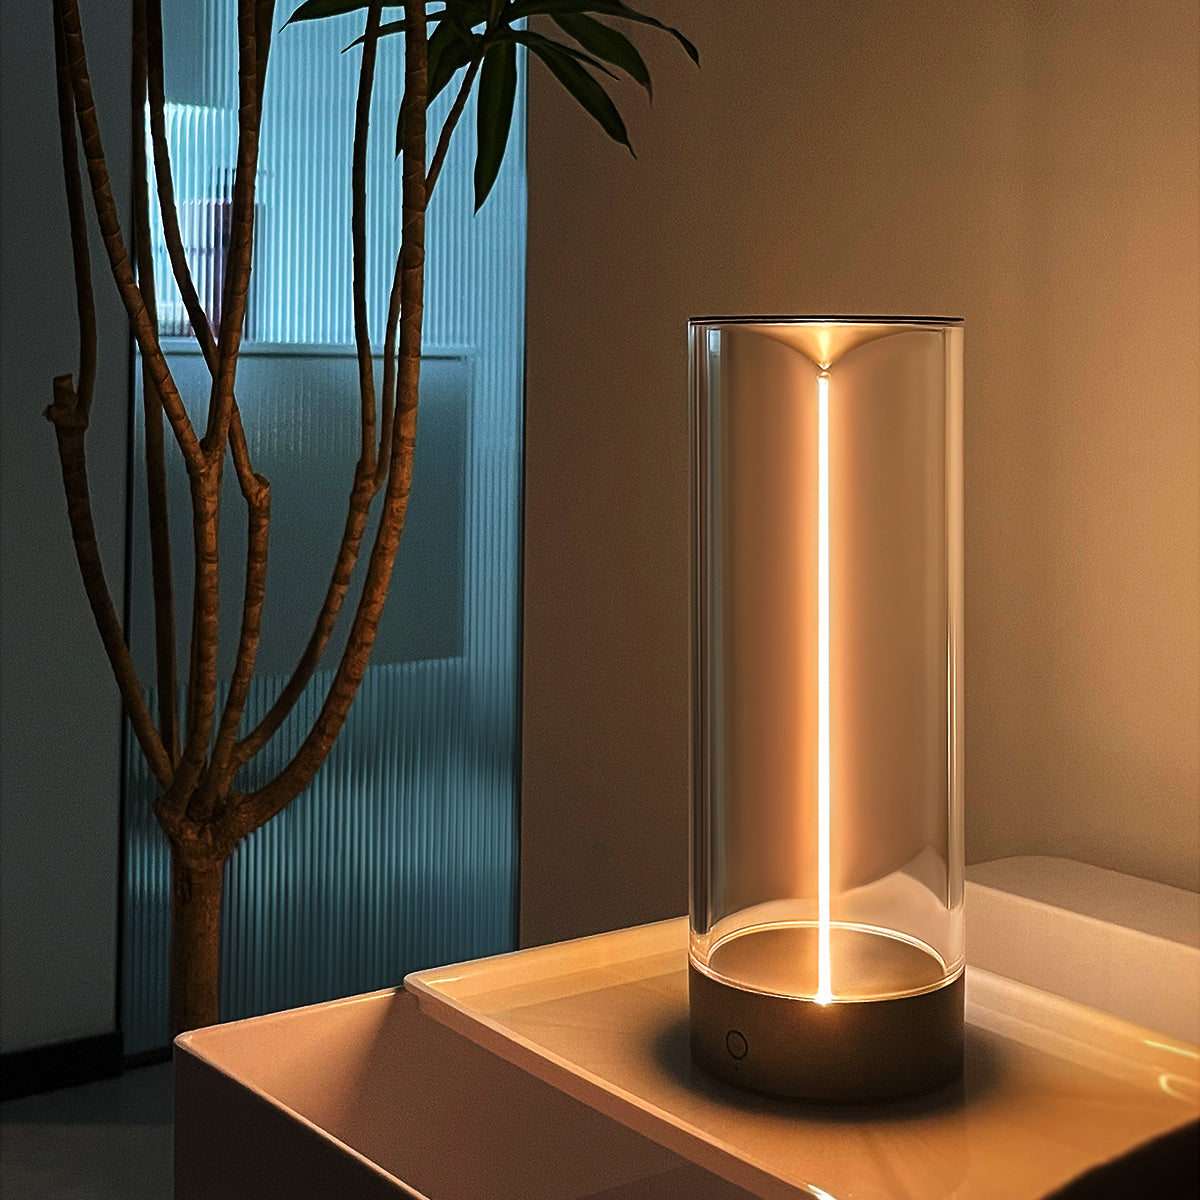 KUXIU Magnetic Creative Lamp